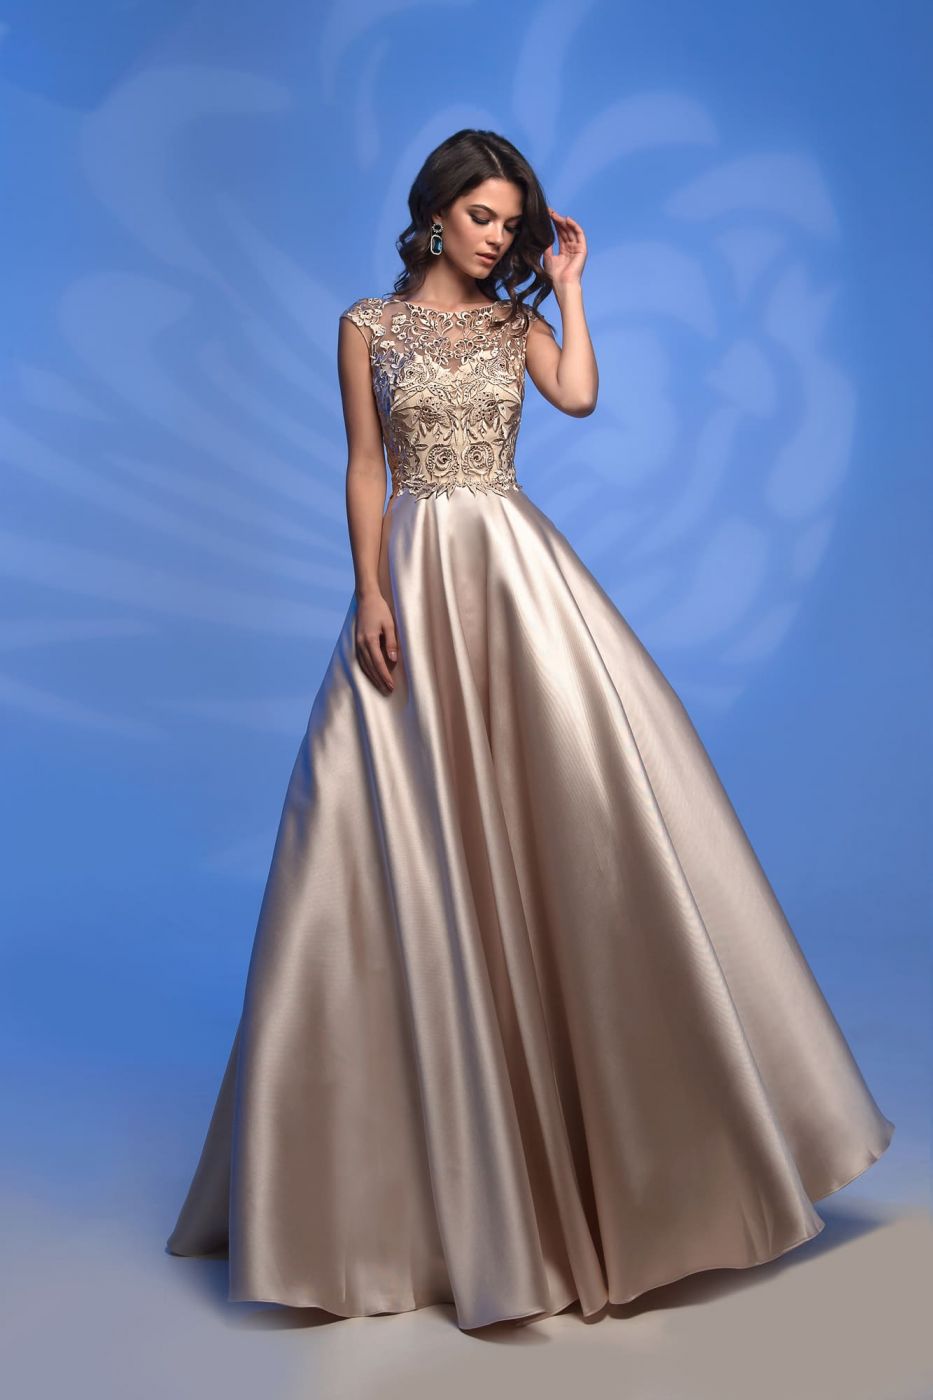 Вечернее платье розового, золотисто-бежевого, серого и тесно-синего оттенка с утонченным глянцем  Арт. 515